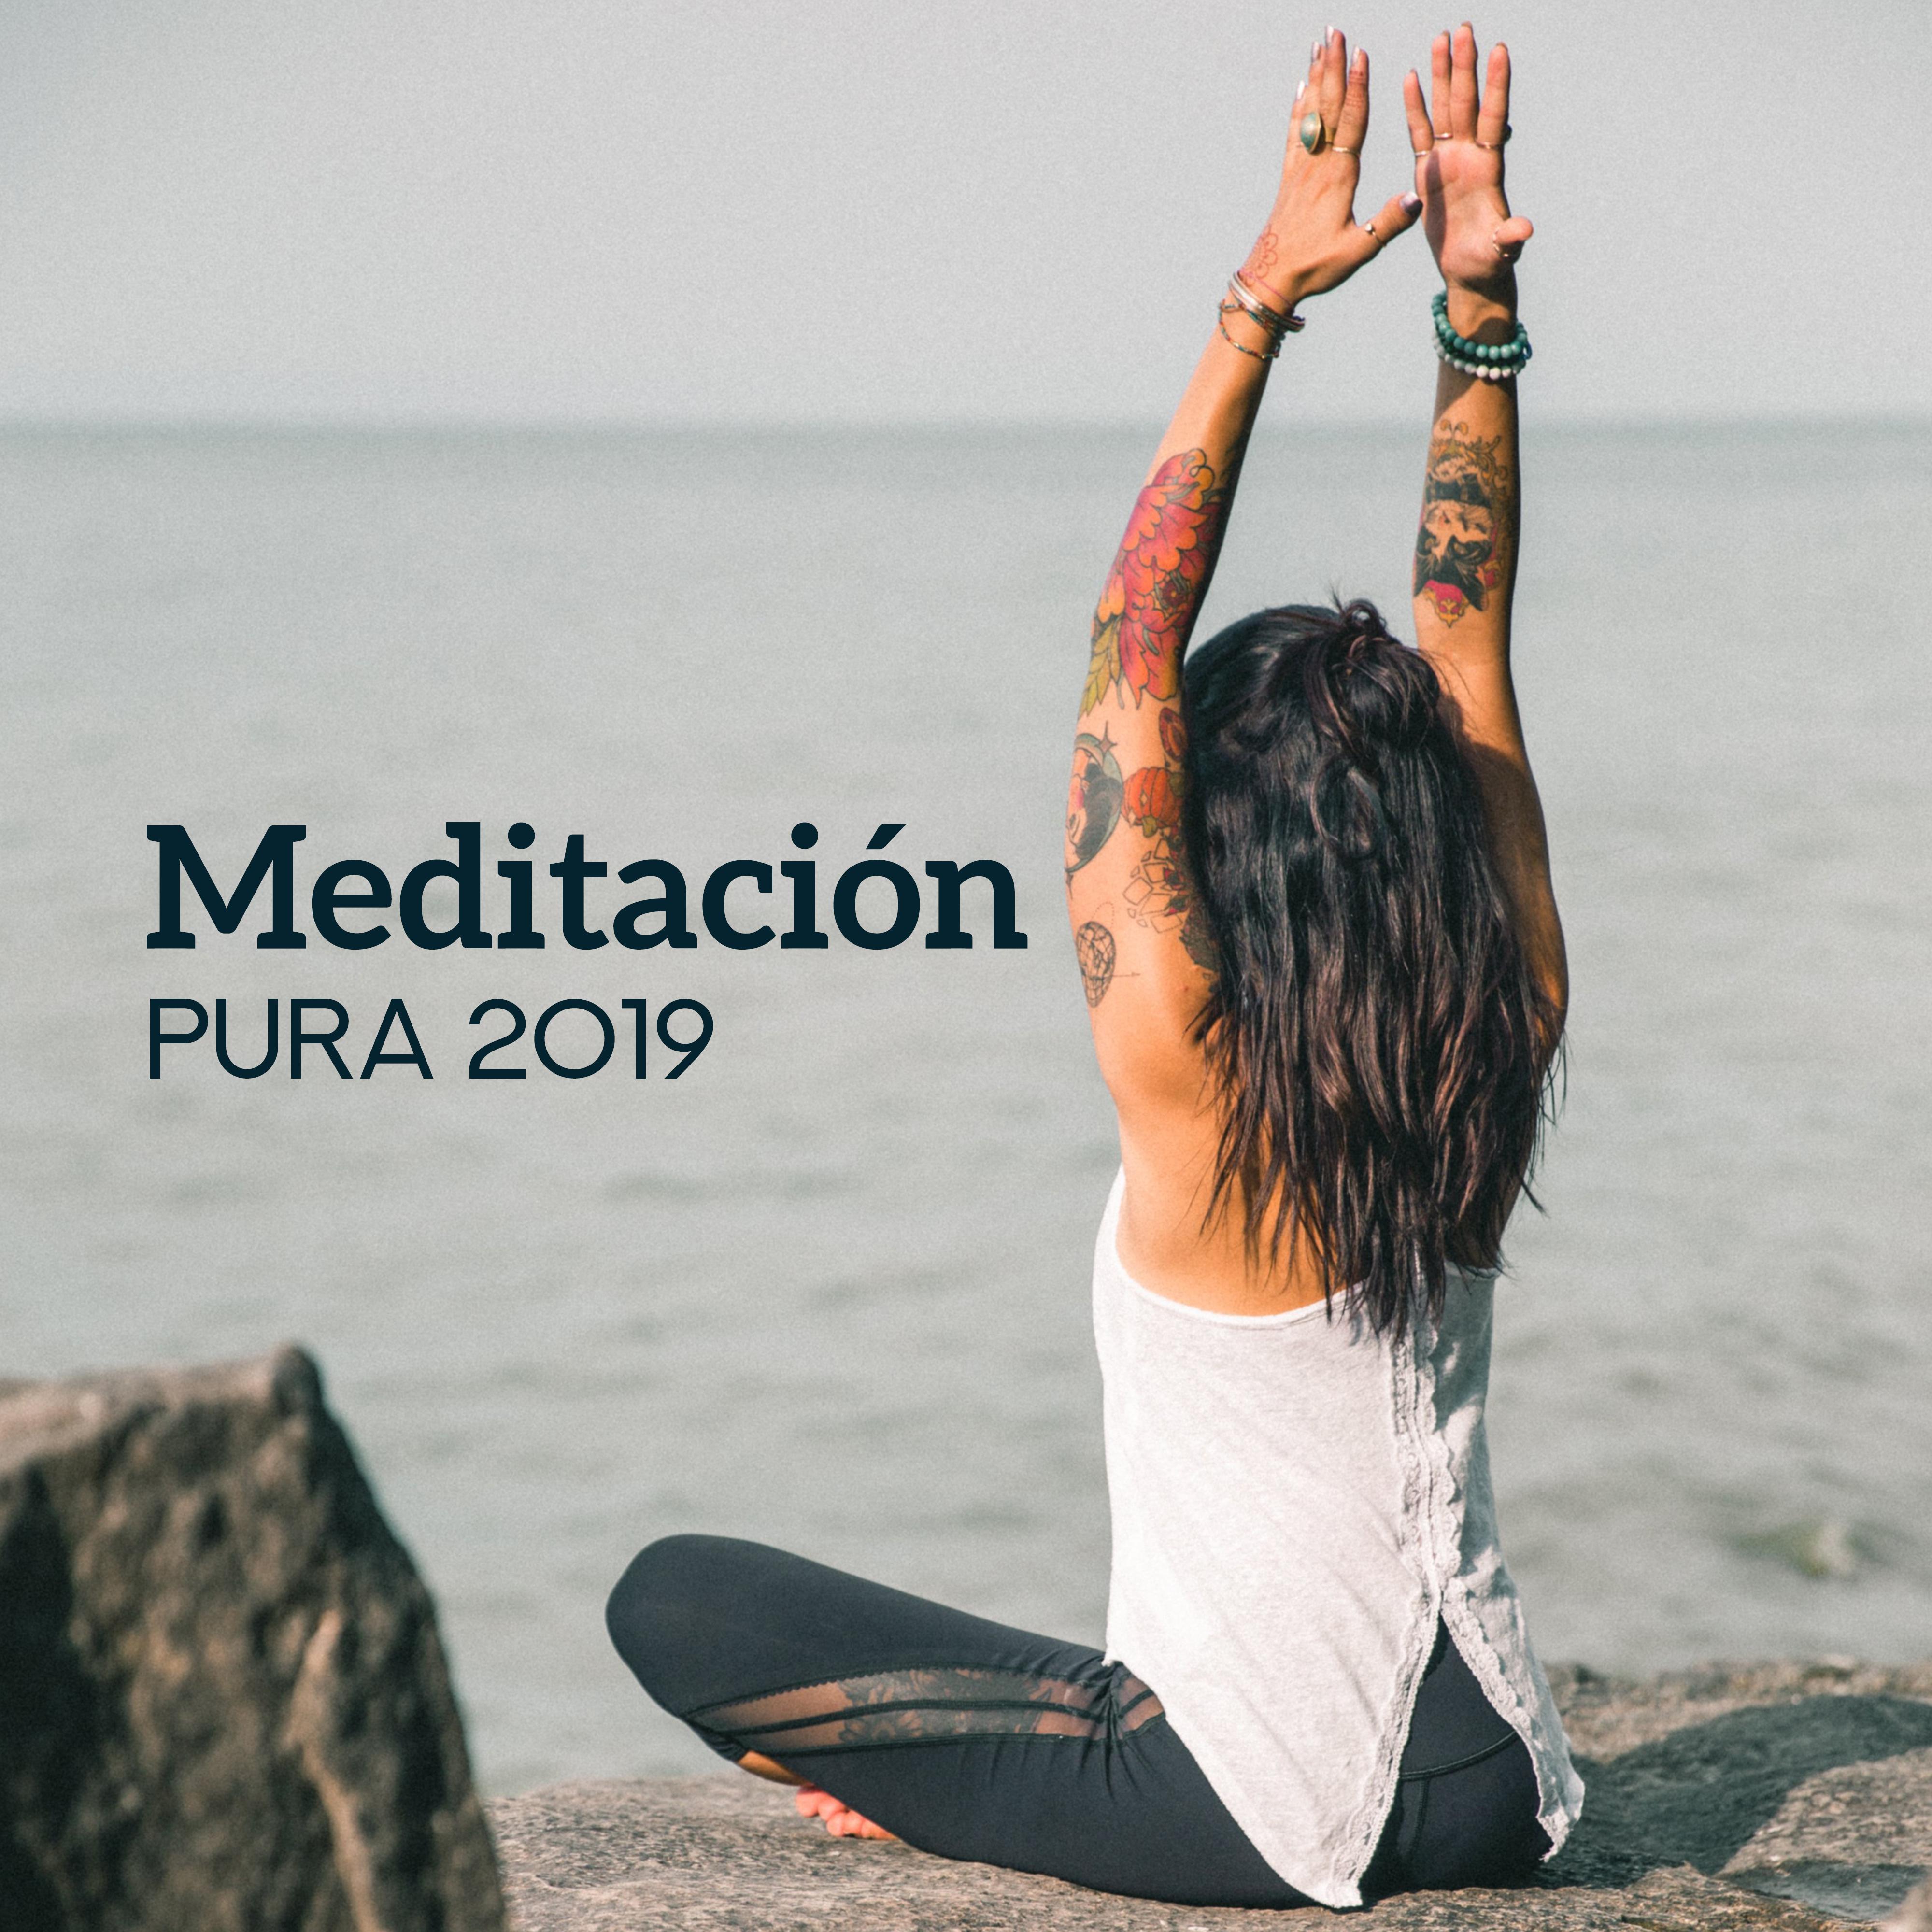 Meditación Pura 2019 - Relajación Profunda, Música Calmante, Meditación Profunda, Armonía Interior, Música para la Relajación, Calma, Meditación de Yoga